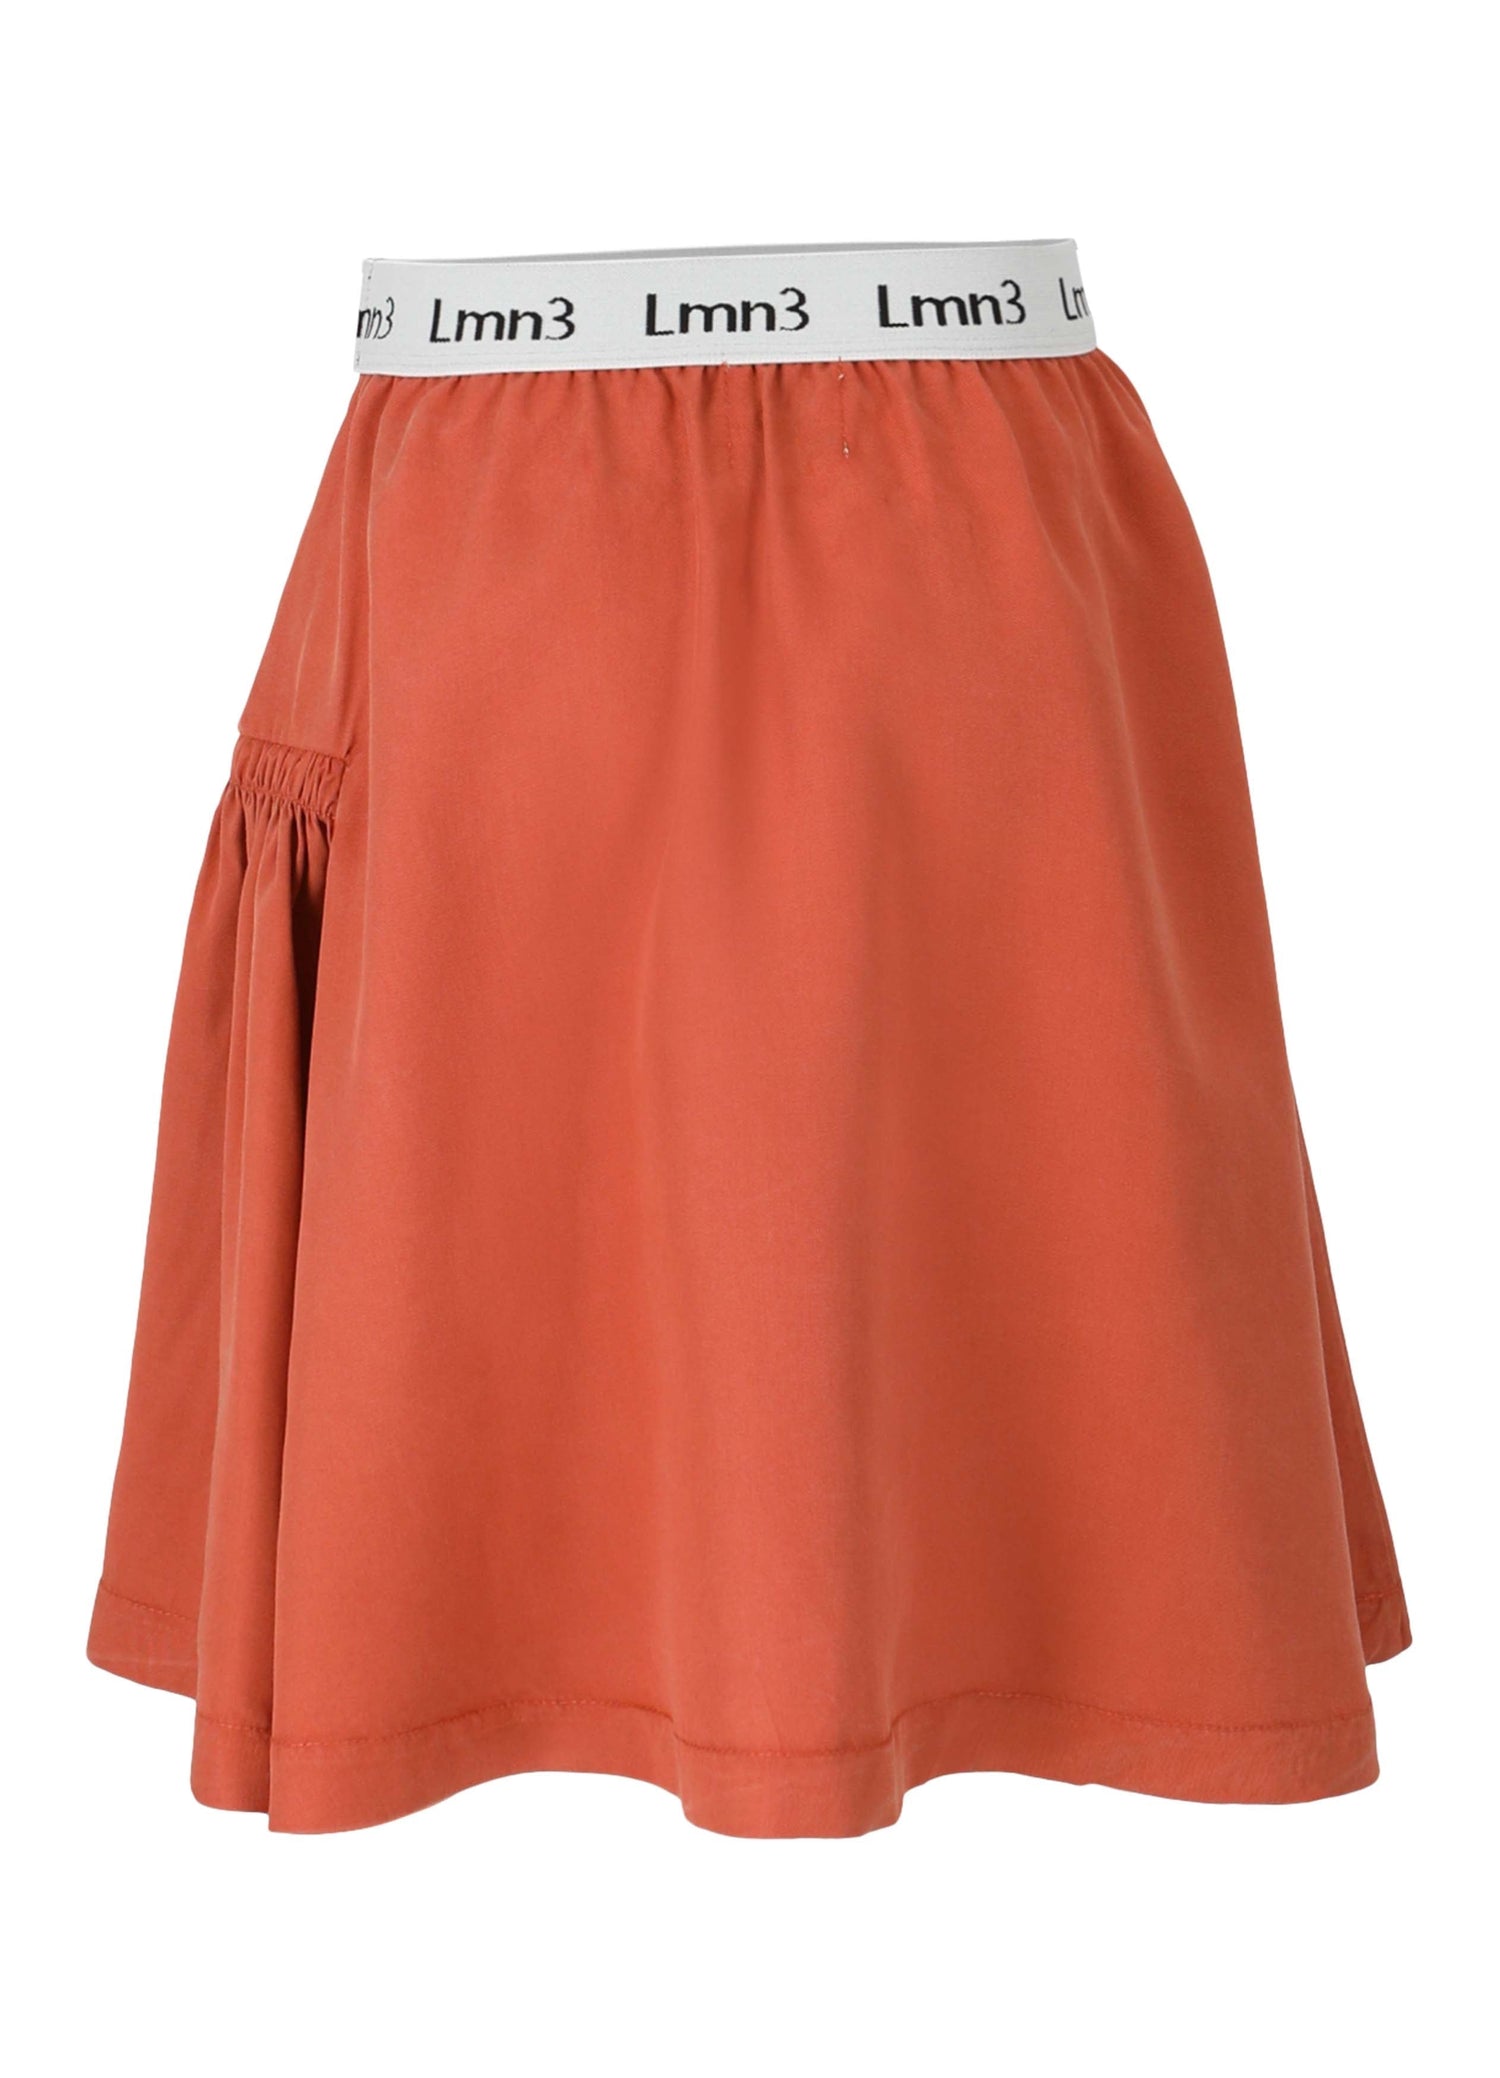 Skirt No. 8 - Caramel Skirts LMN3 